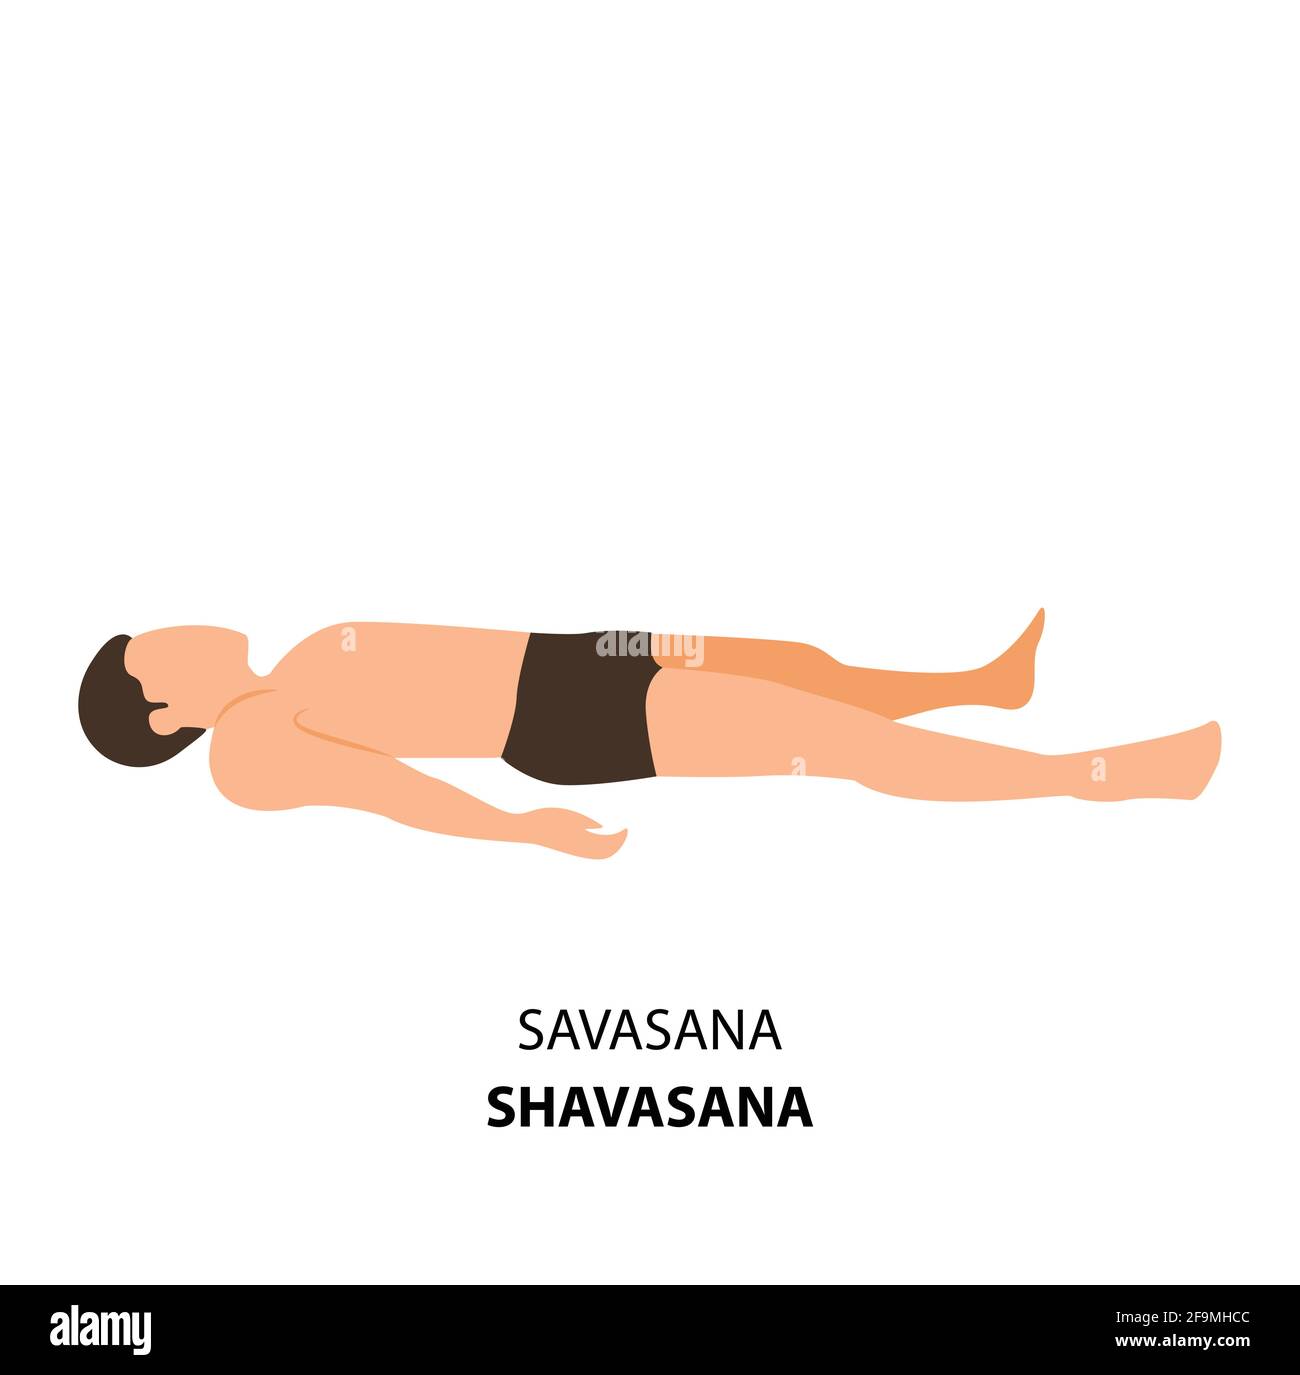 Yoga Savasana Stock Illustrations – 76 Yoga Savasana Stock Illustrations,  Vectors & Clipart - Dreamstime